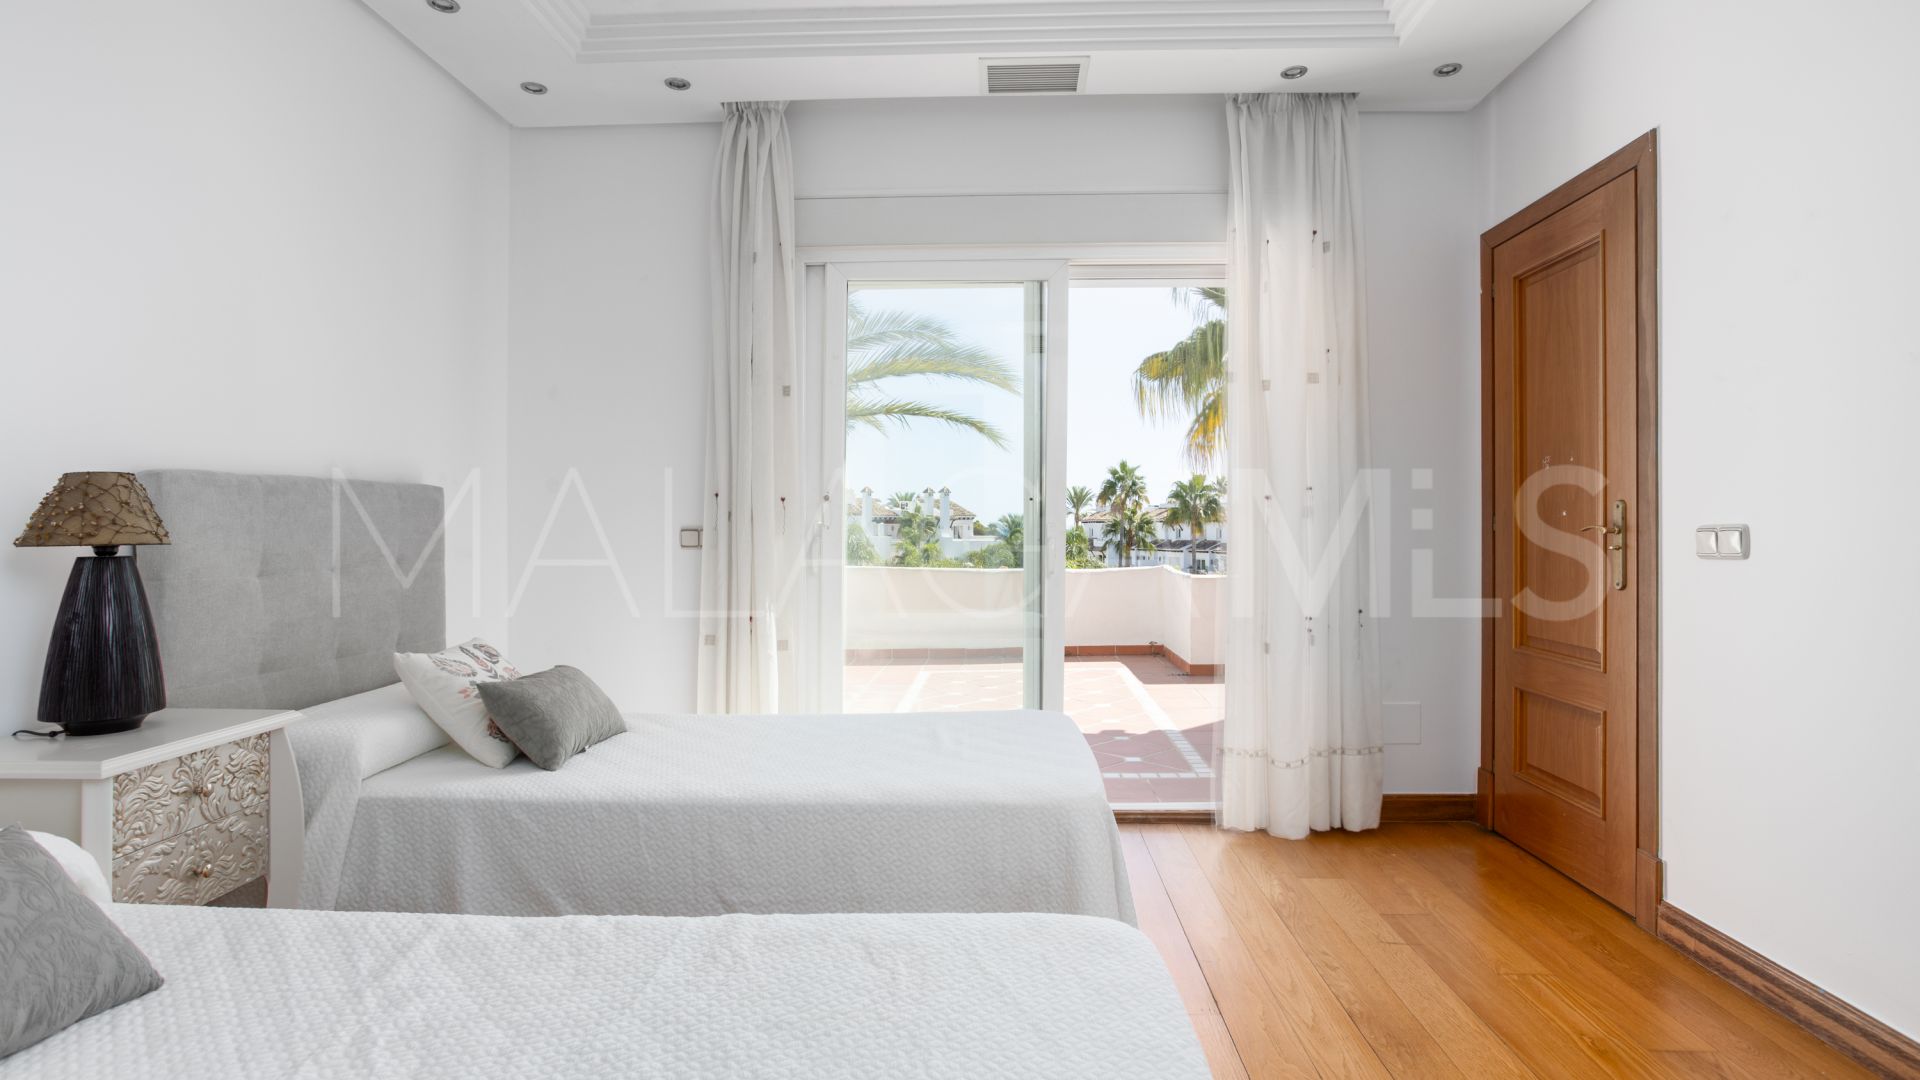 Pareado with 3 bedrooms for sale in Costalita del Mar